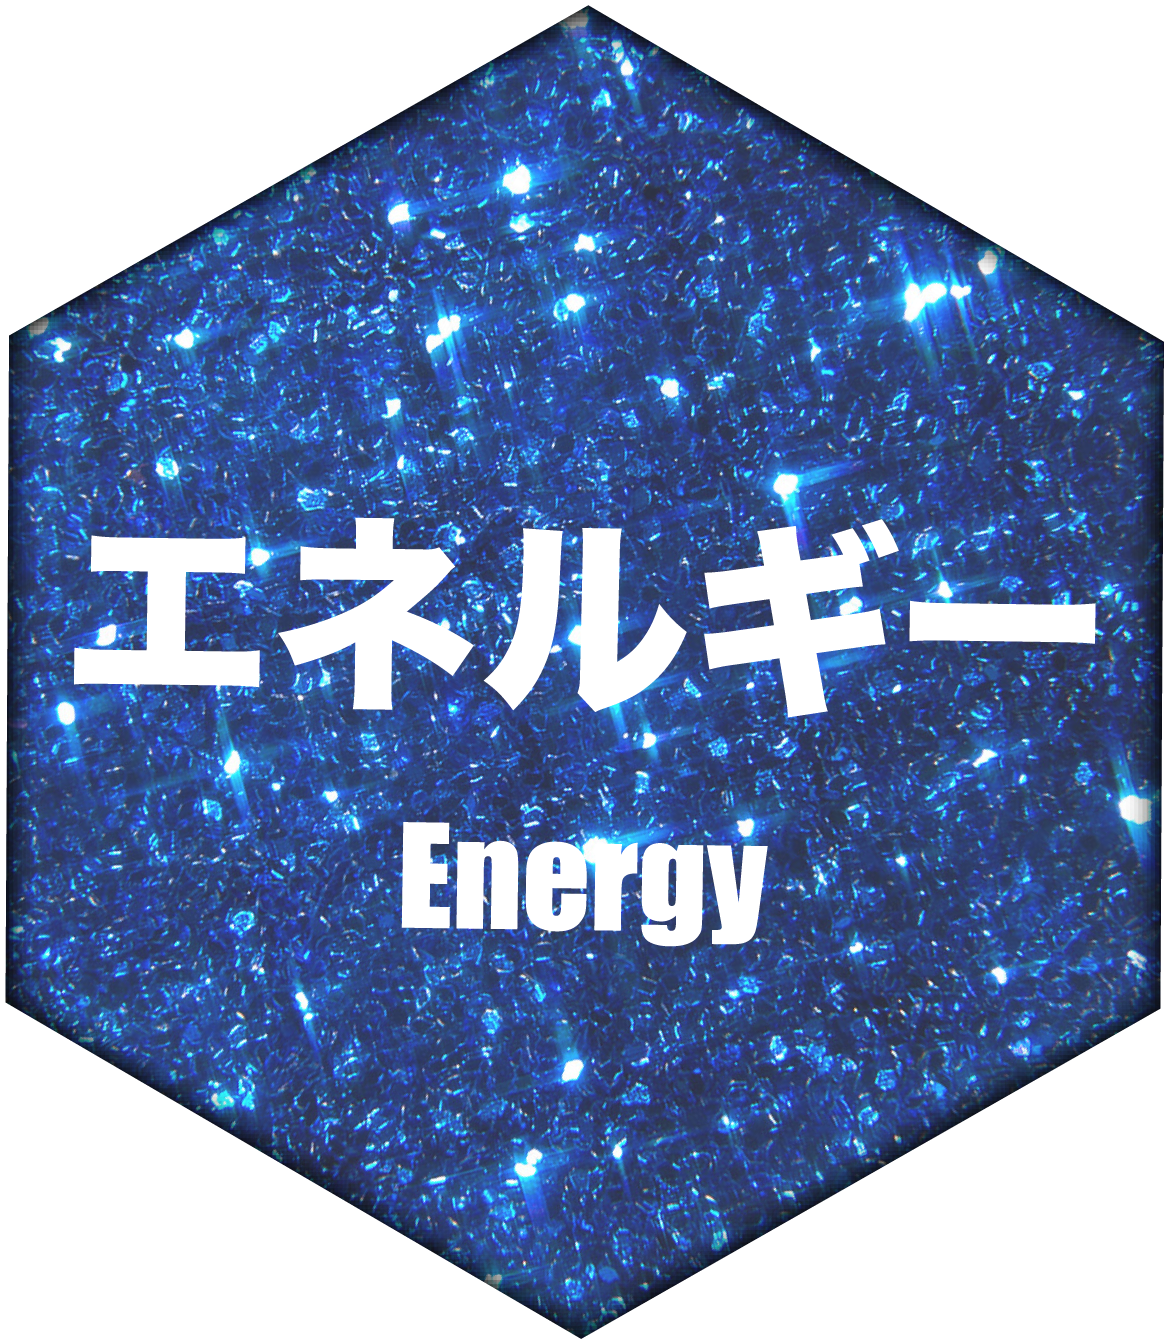 エネルギー